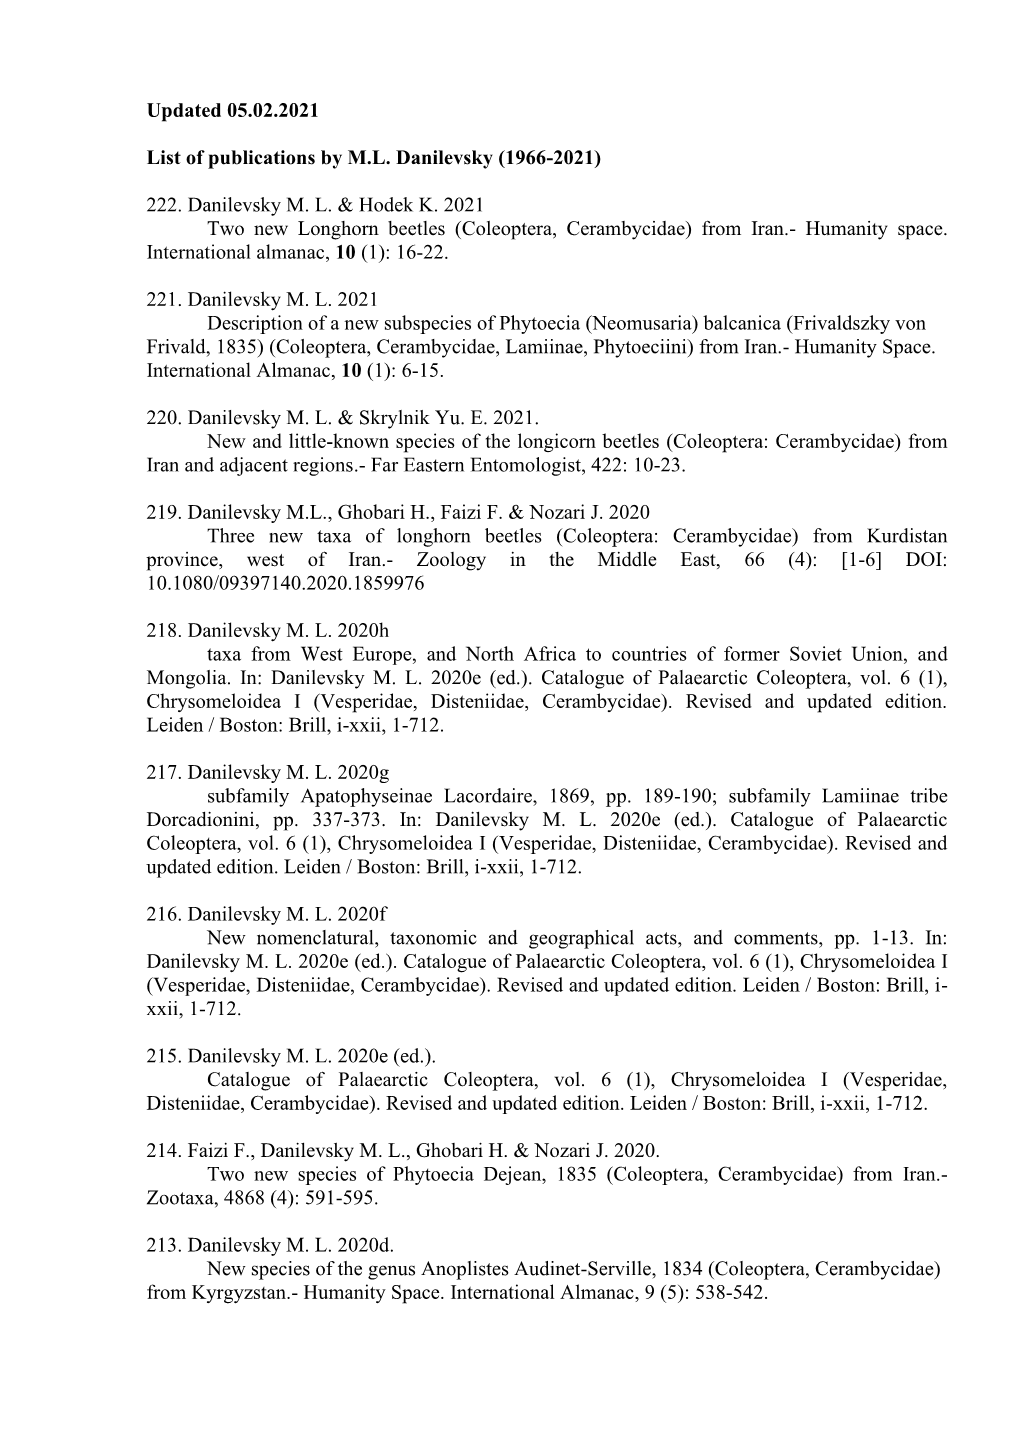 List of Publications by M.L. Danilevsky (1966-2021)